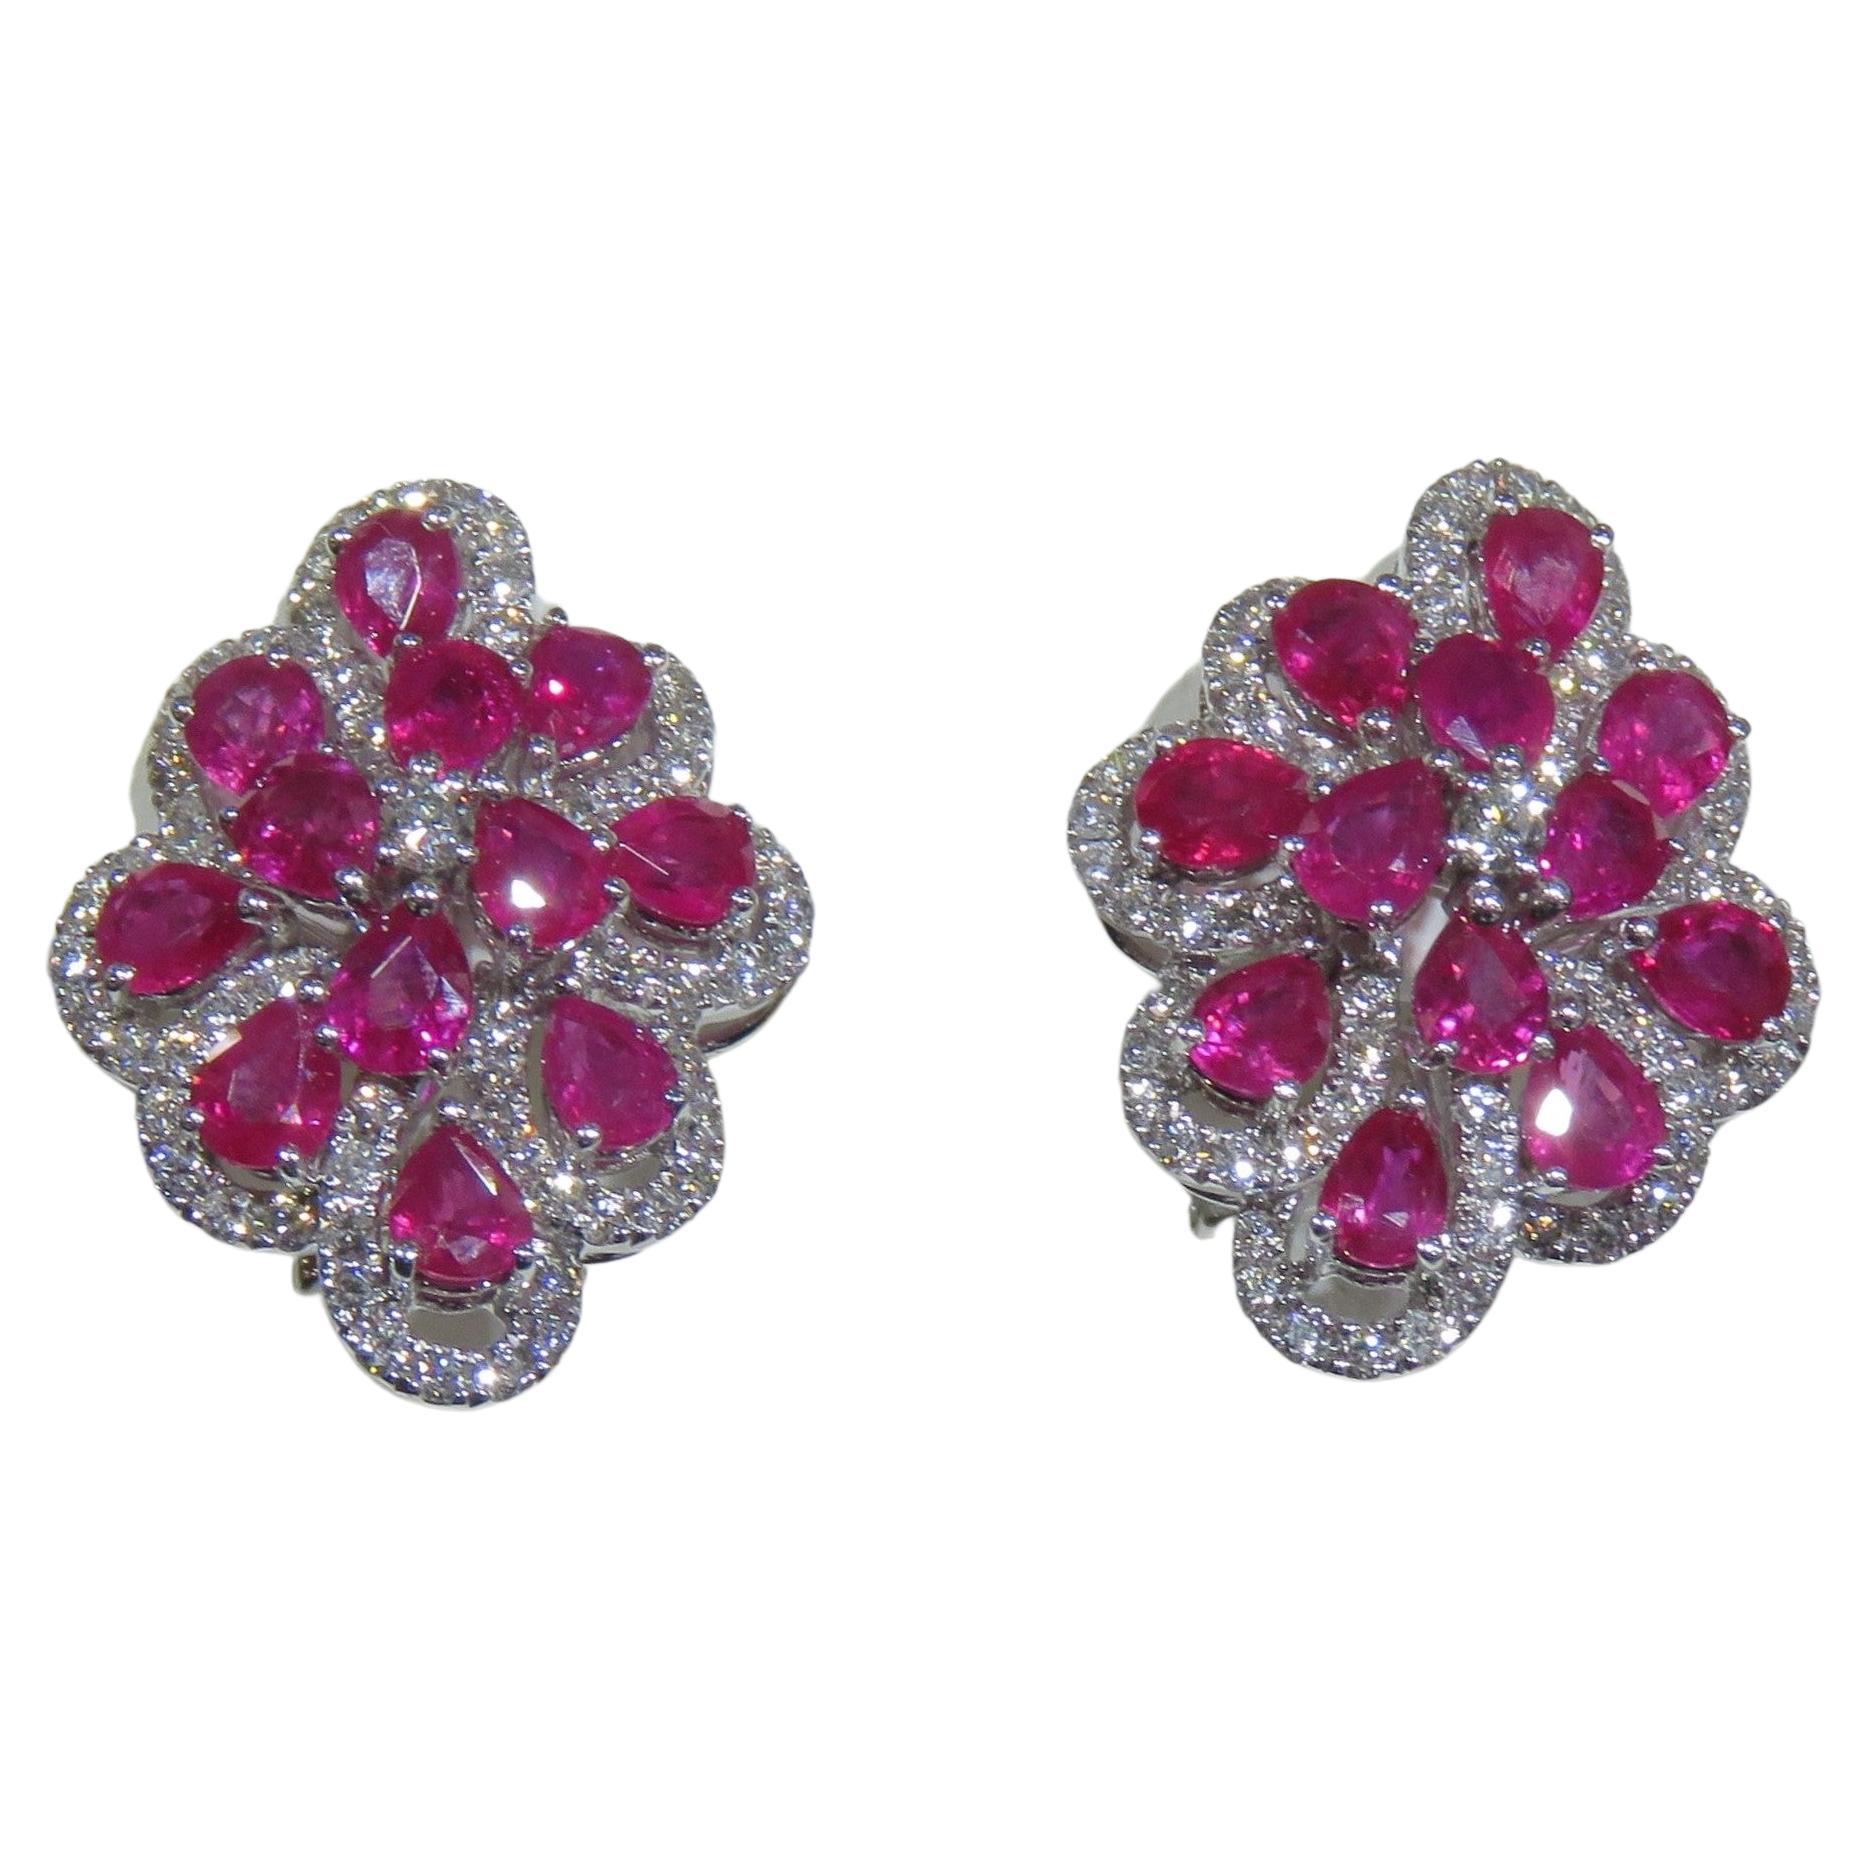 NWT 17, 579 18KT Fancy Large Glittering Rare Fancy Colorful Ruby Diamond Earrings